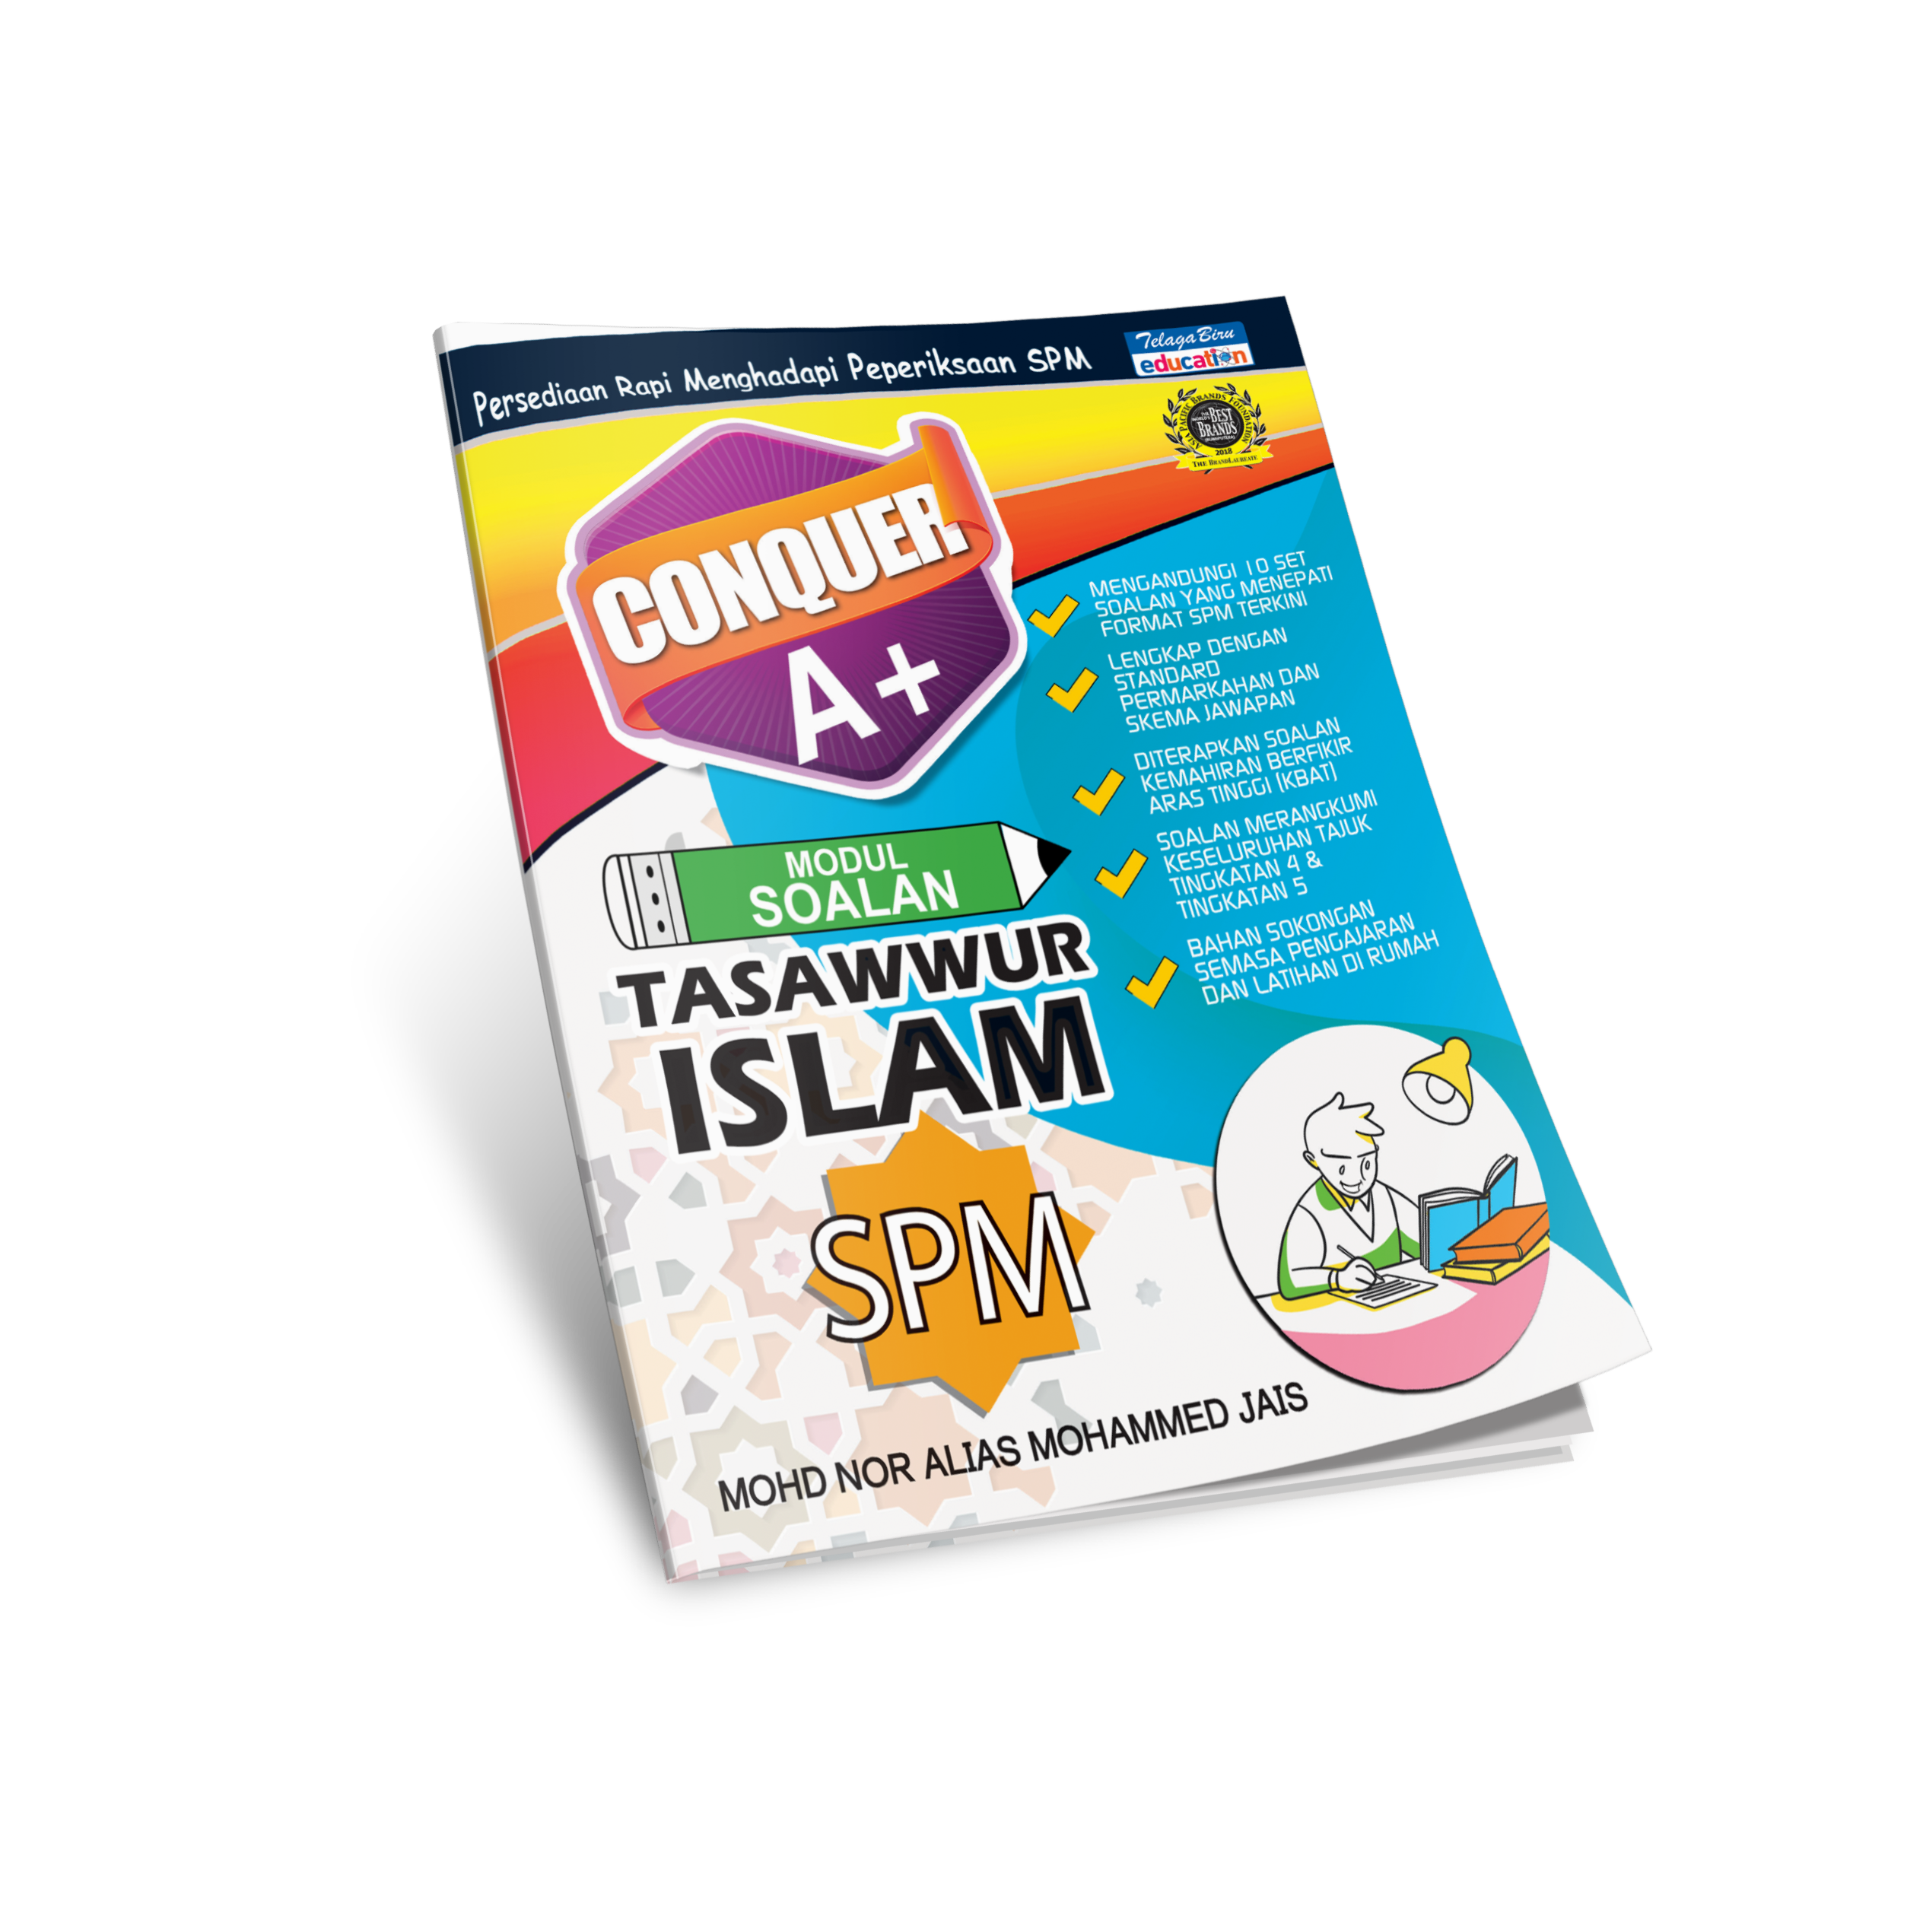 Conquer A+ Modul Soalan Tasawwur Islam SPM - (TBBS1252)